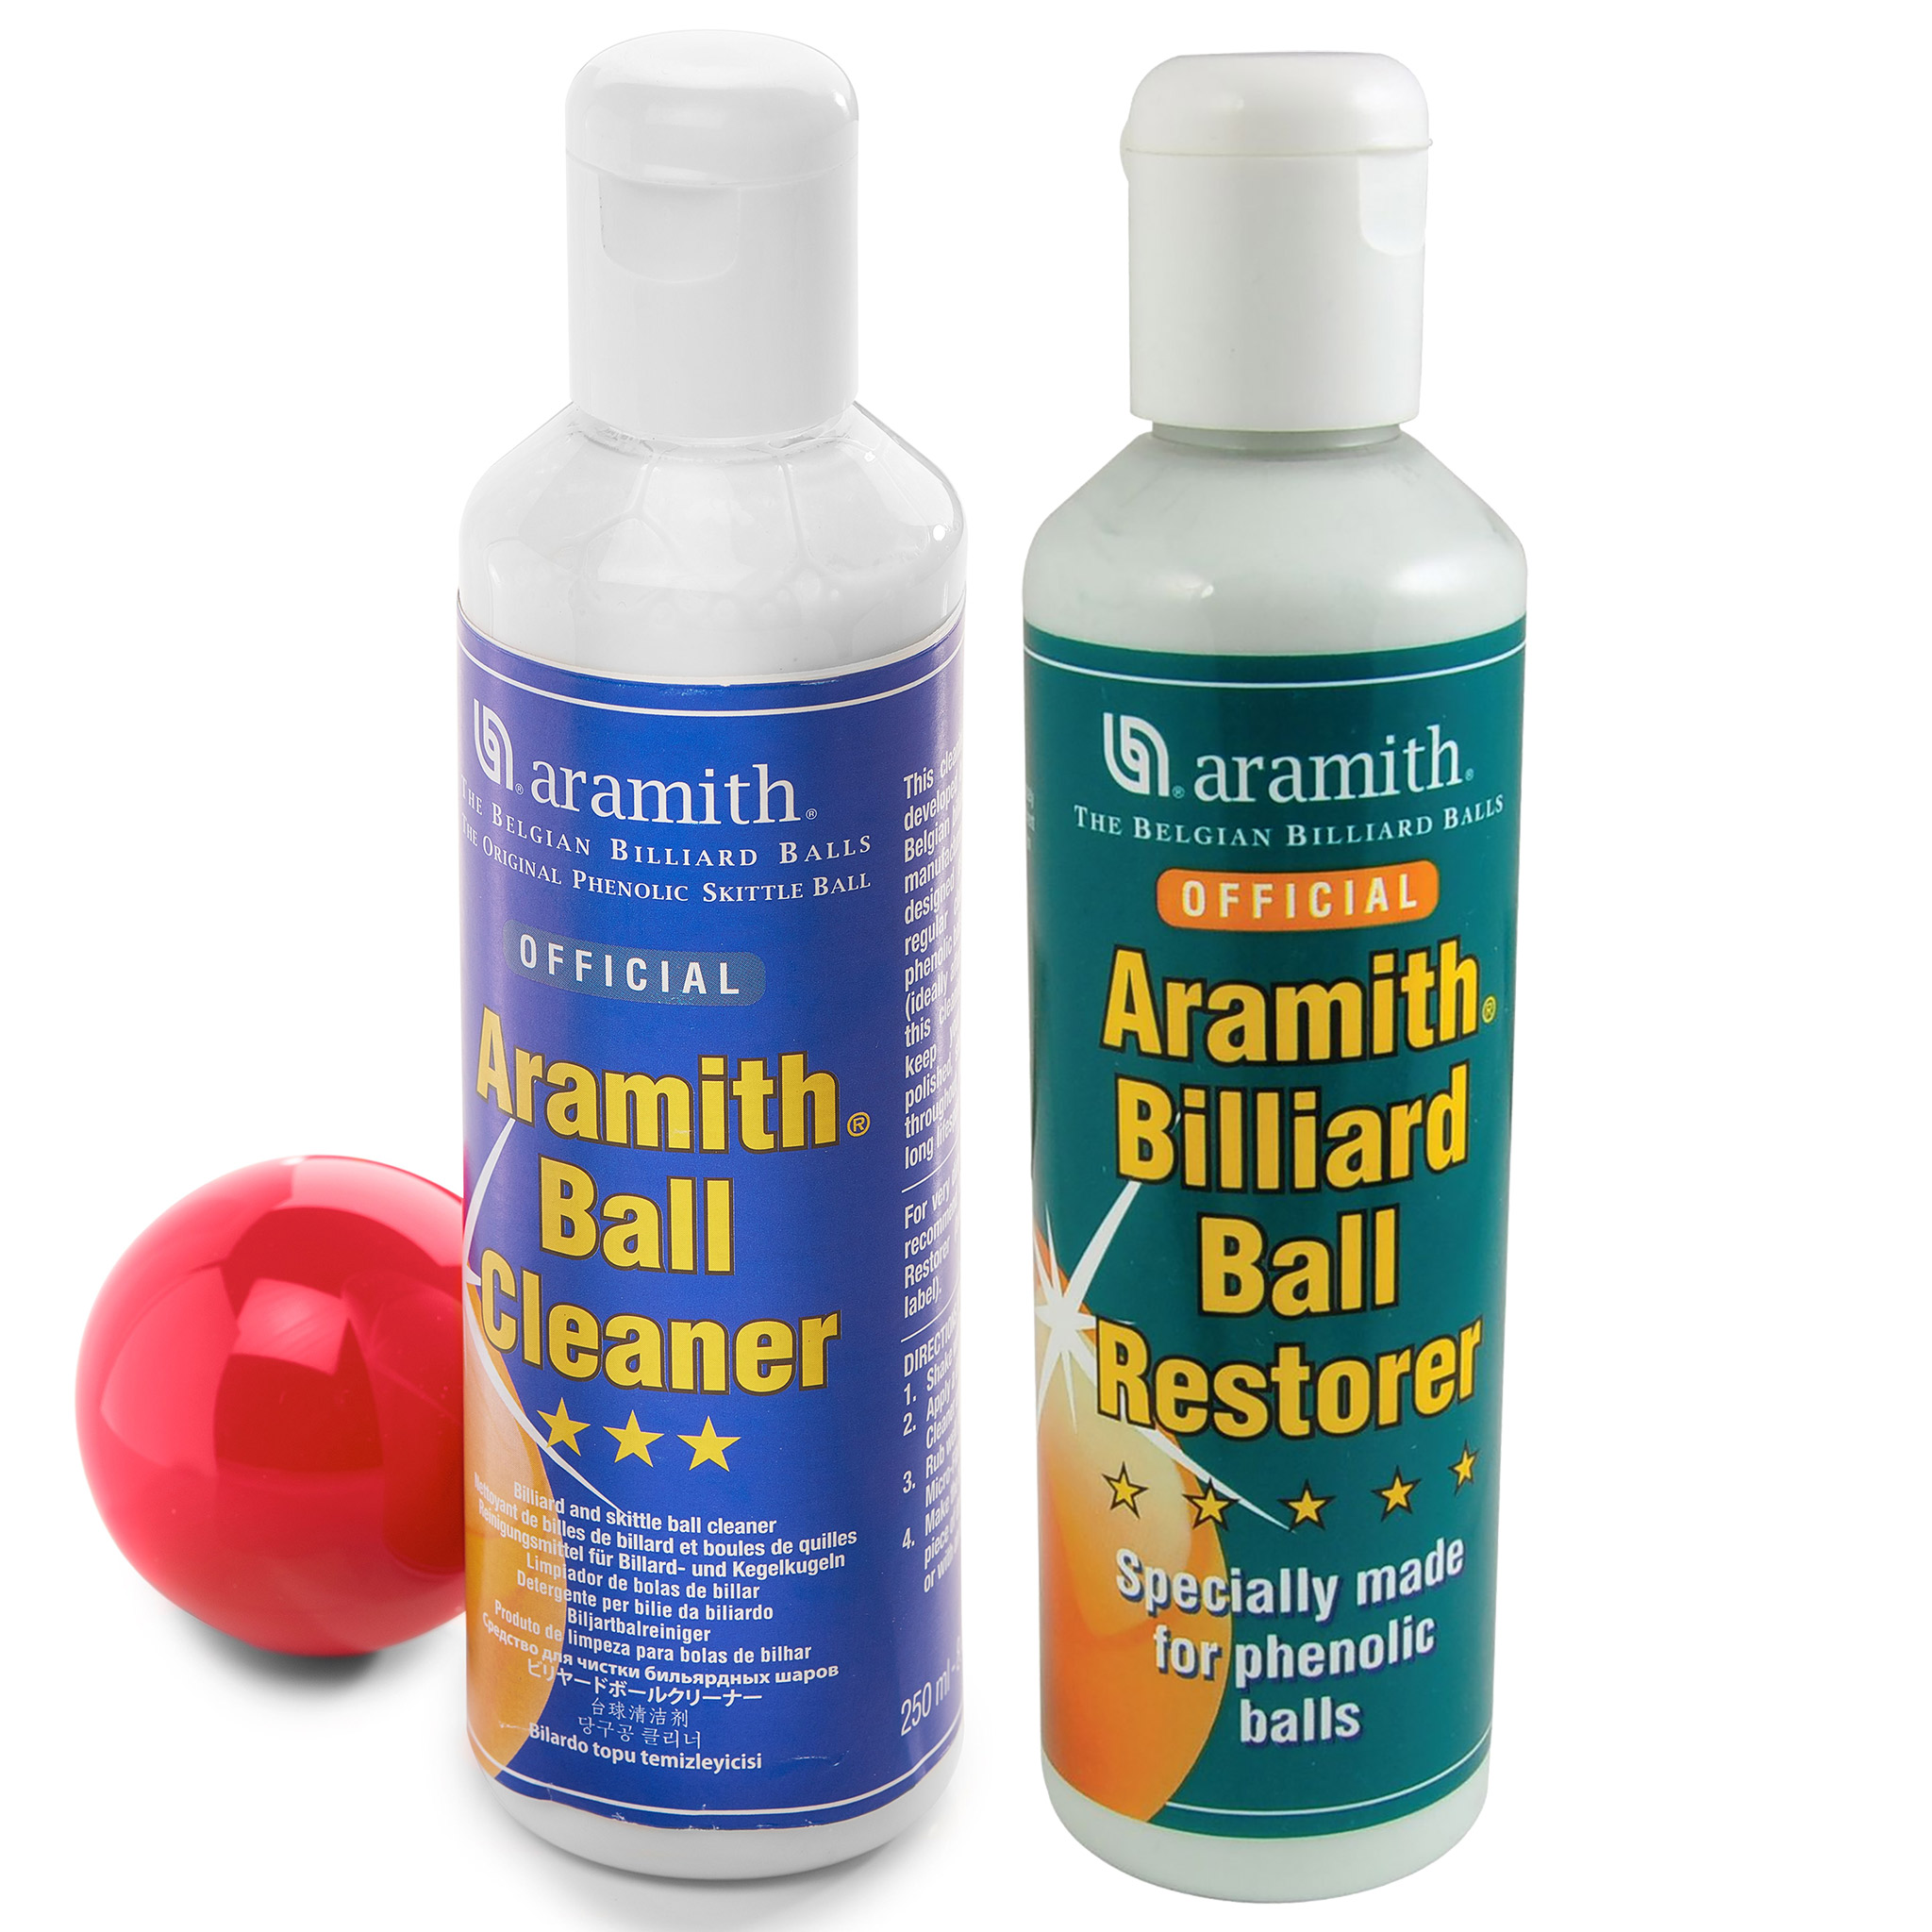 Aramith Ball cleaner or Ball restorer